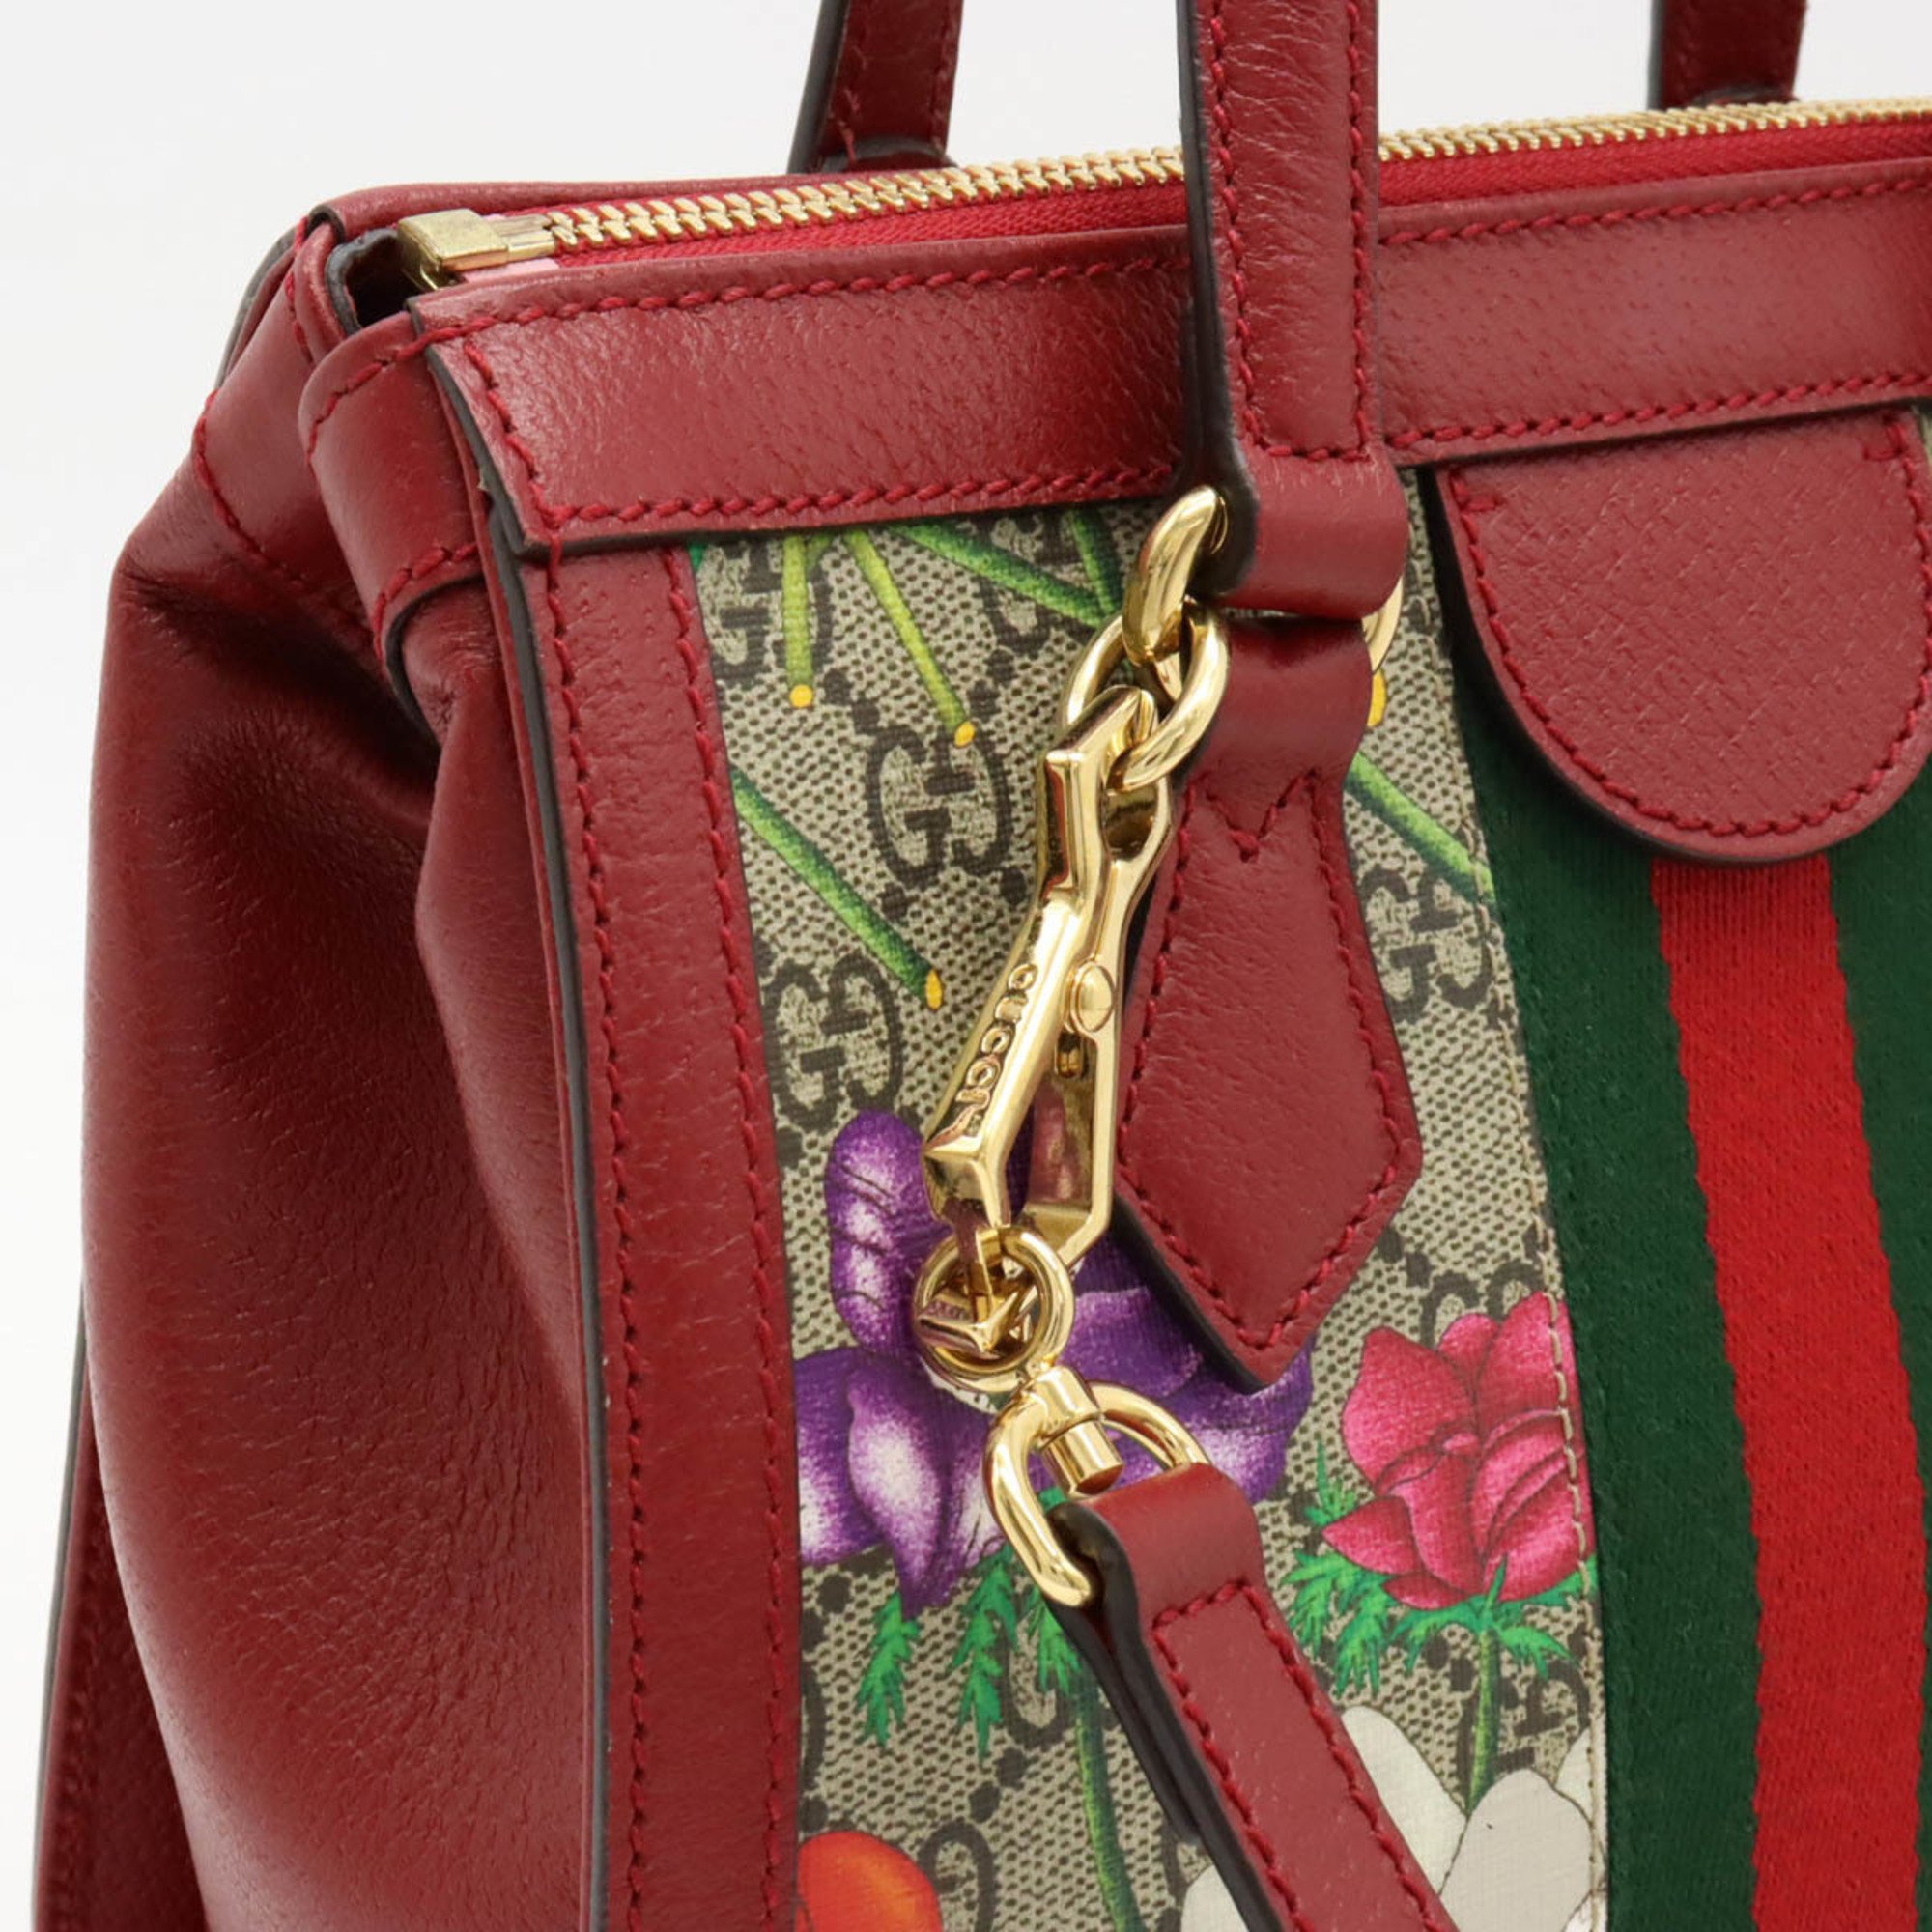 GUCCI Ophidia GG Flora Handbag Shoulder Bag PVC Leather Red Beige Multicolor 547551